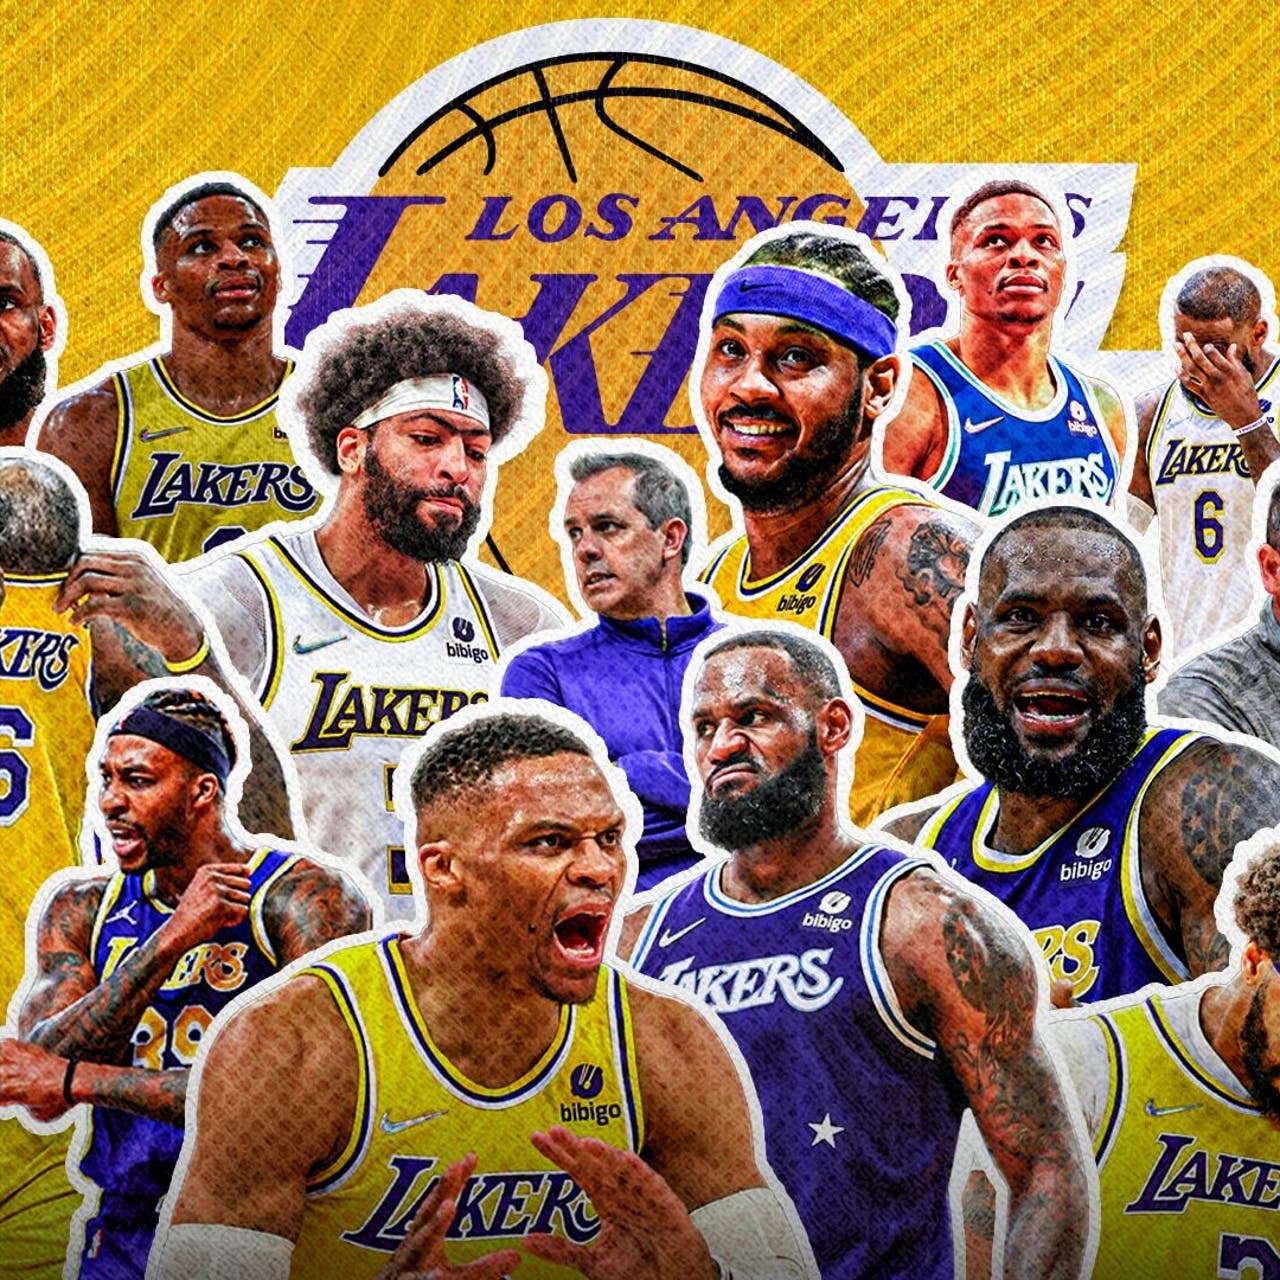 https://a57.foxsports.com/statics.foxsports.com/www.foxsports.com/content/uploads/2022/04/1280/1280/4.6.22_Lakers-are-bad_NBA_EDIT-16x9.jpg?ve=1&tl=1